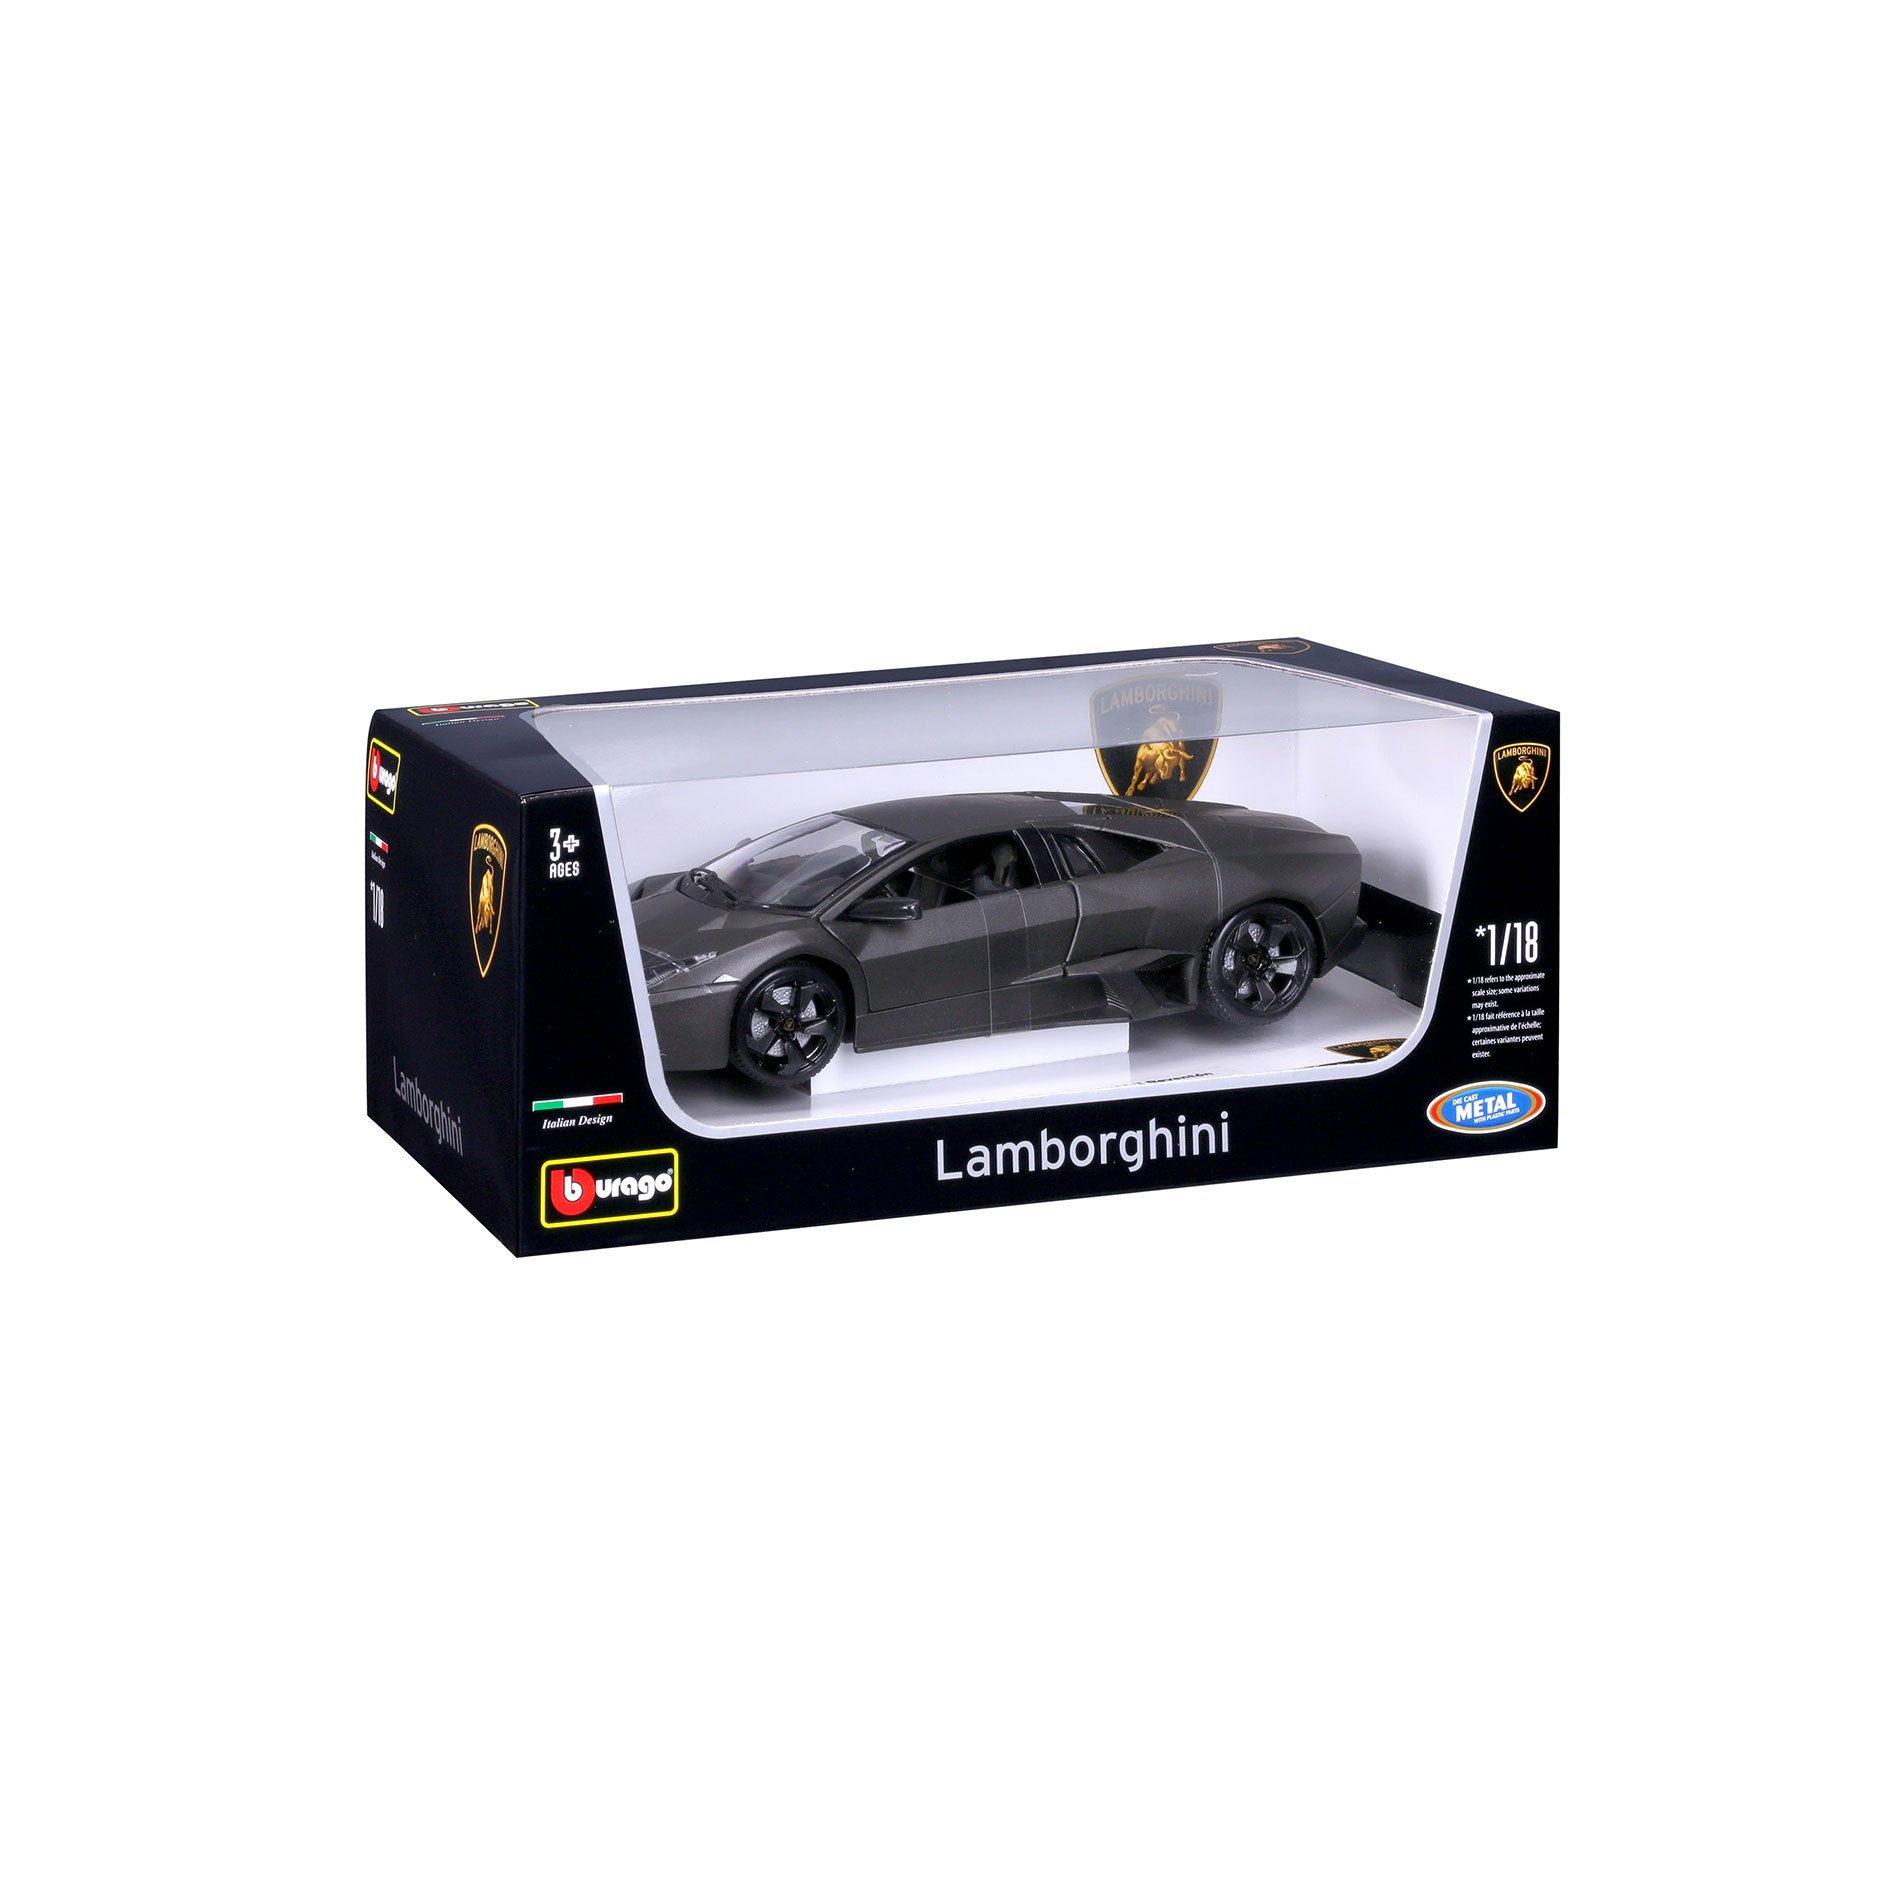 18-11029 - Bburago - 1:18 - Lamborghini Reventon - Grigio Metallizzato